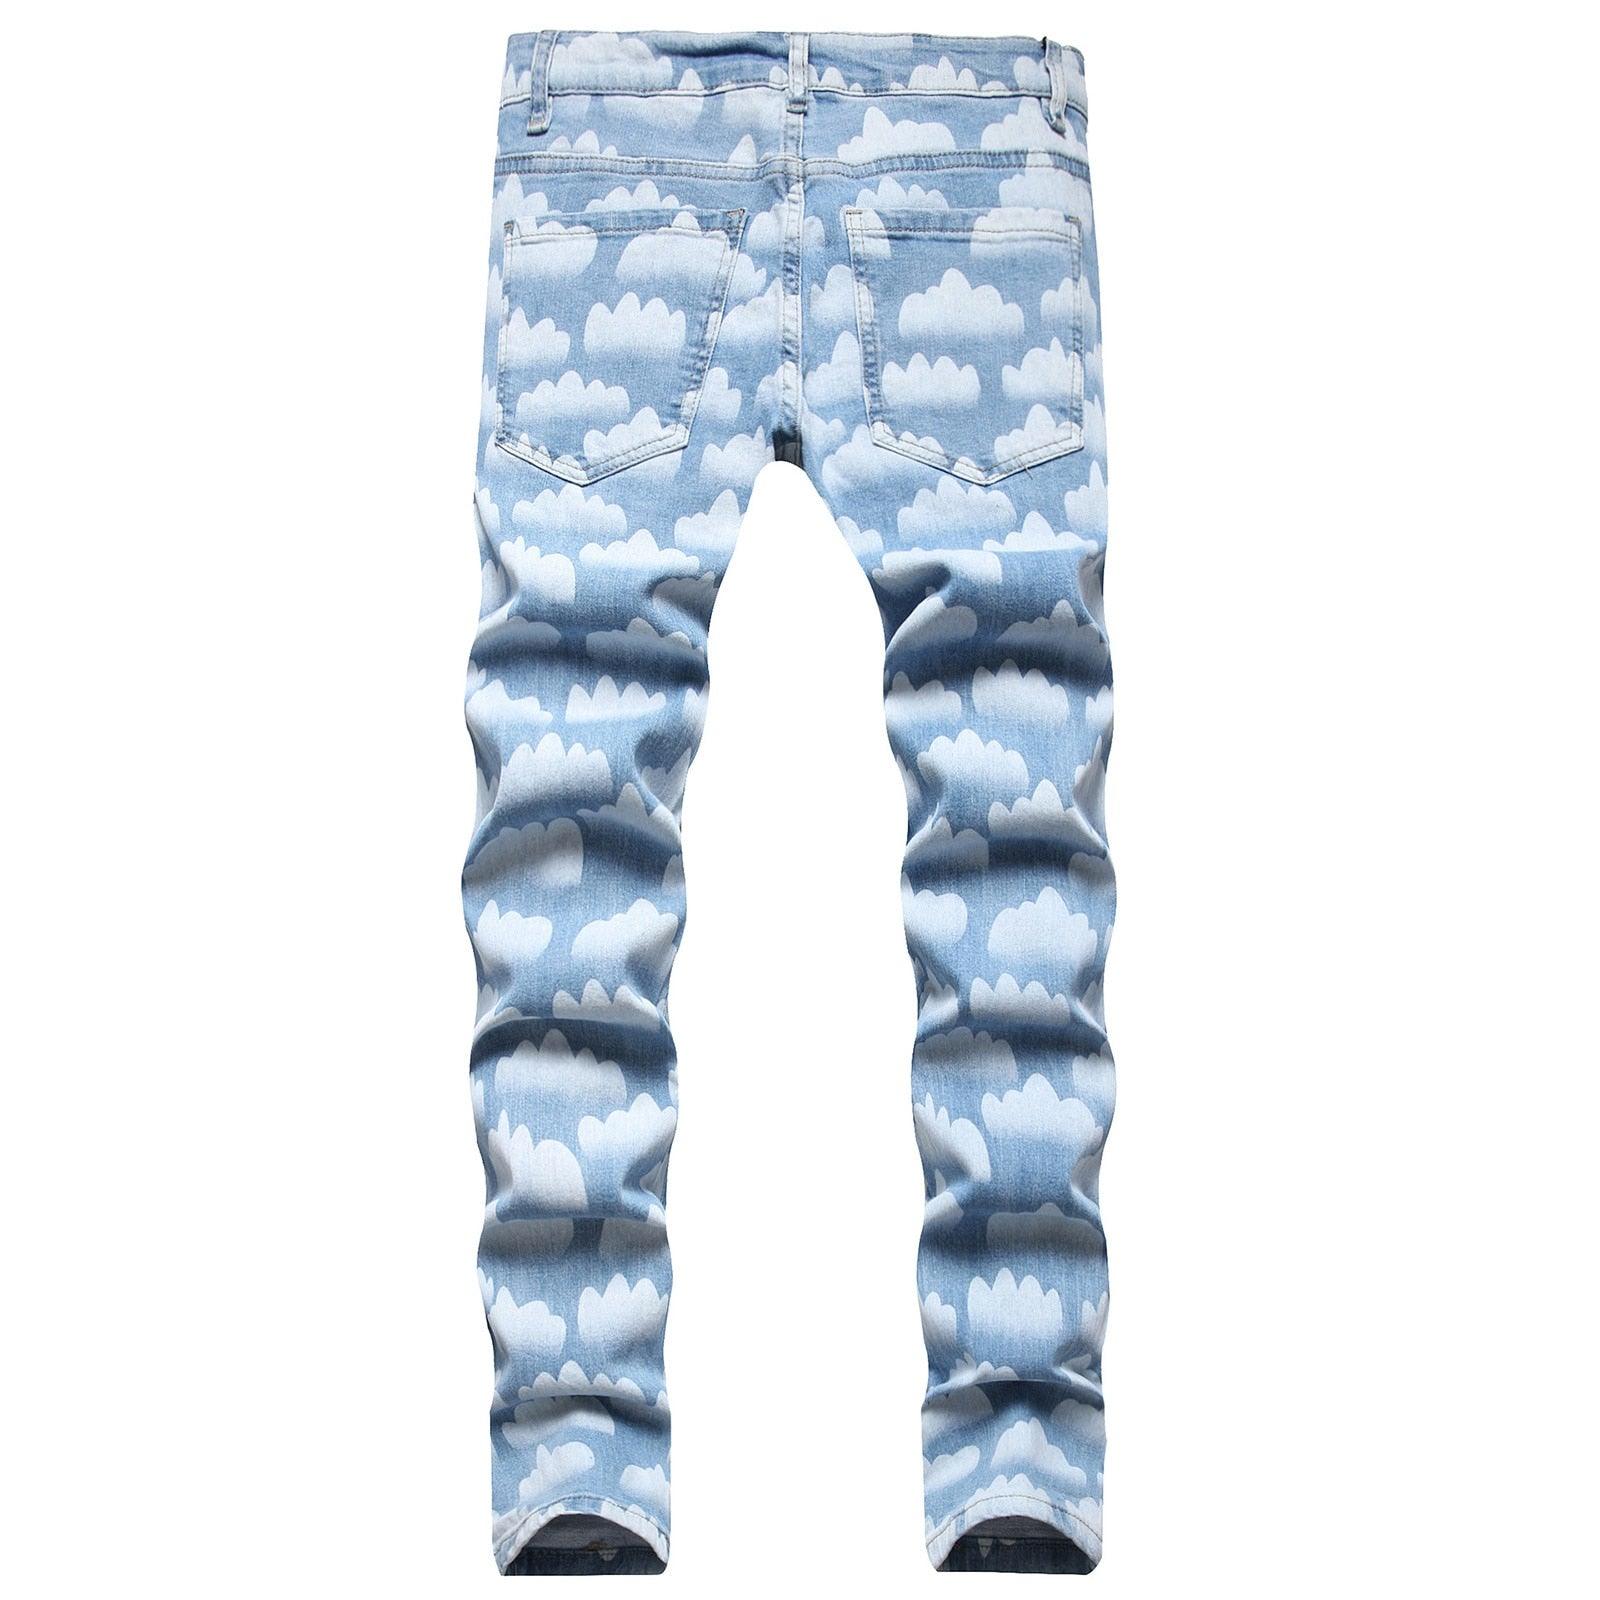 Men's Pants - Jeans Mens Artistic Jeans Blue Sky White Cloud Painted Denim Trousers